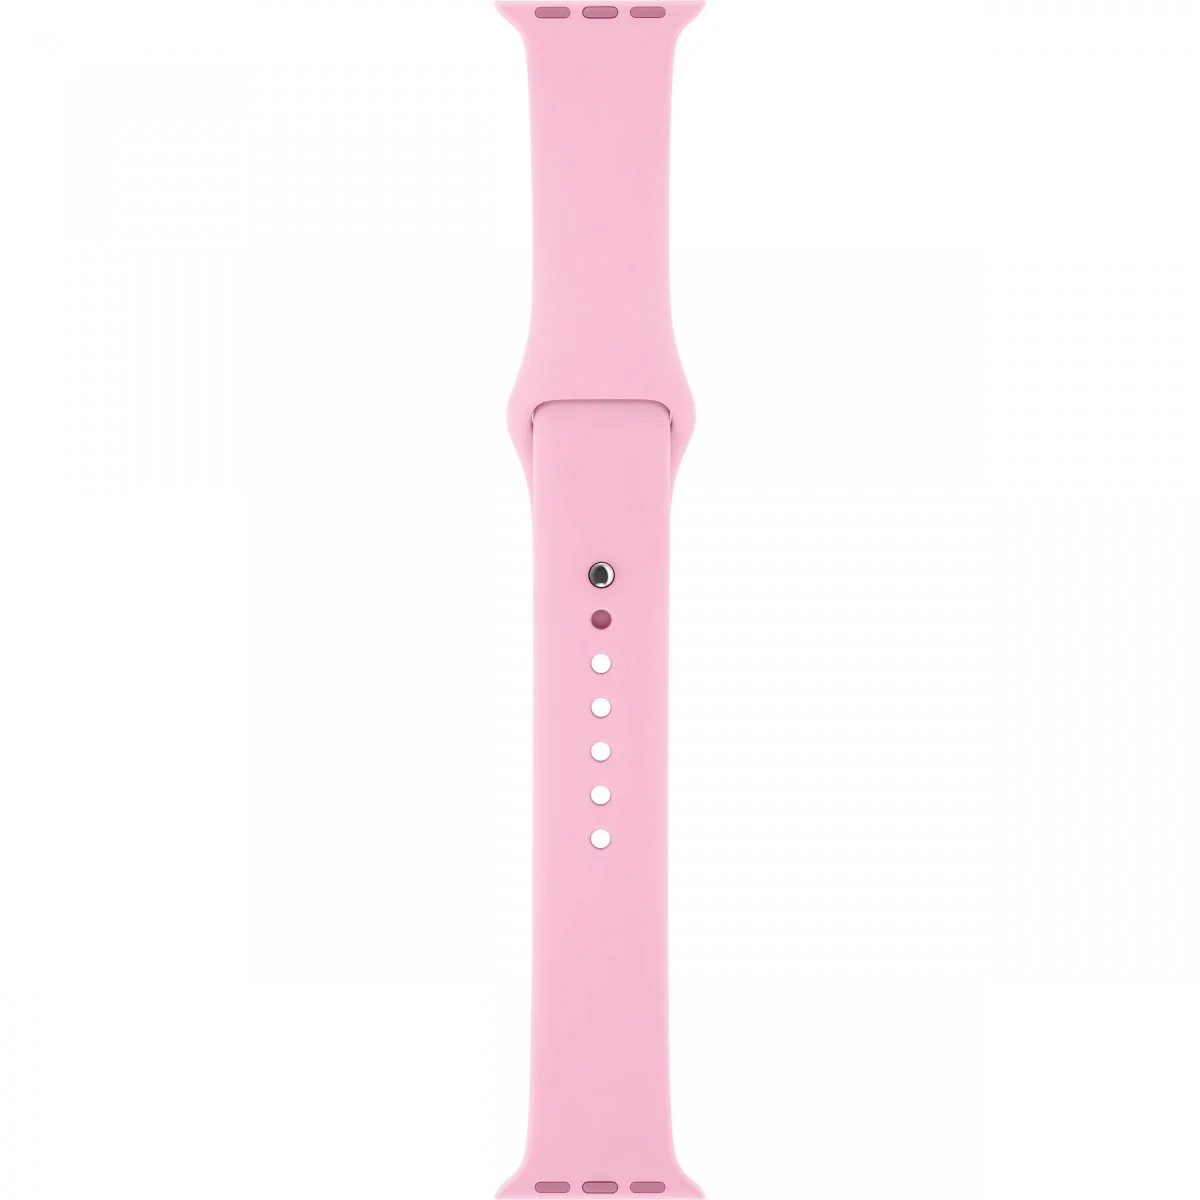 Řemínek iMore SmoothBand pro Apple Watch Series 1/2/3 (38mm) - Světle růžový